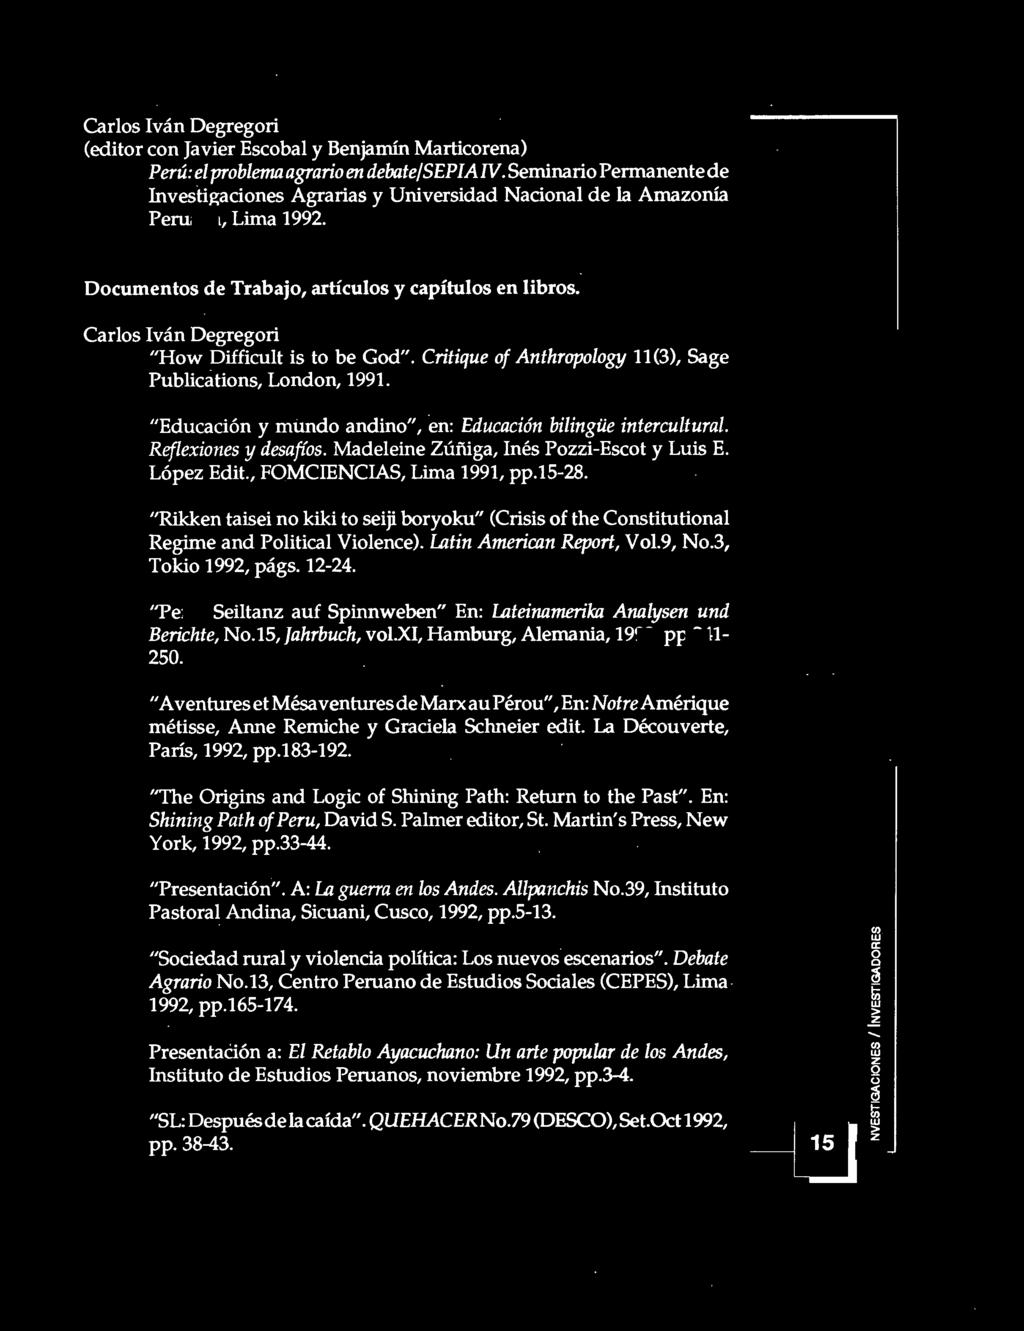 Critique f Anthrplgy 11(3), Sage Publicatins, Lndn, 1991. "Educación y mund andin", en: Educación bilingüe intercultural. Reflexines y desafís. Madeleine Zúñiga, Inés Pi-Esct y Luis E. Lópe Edit.